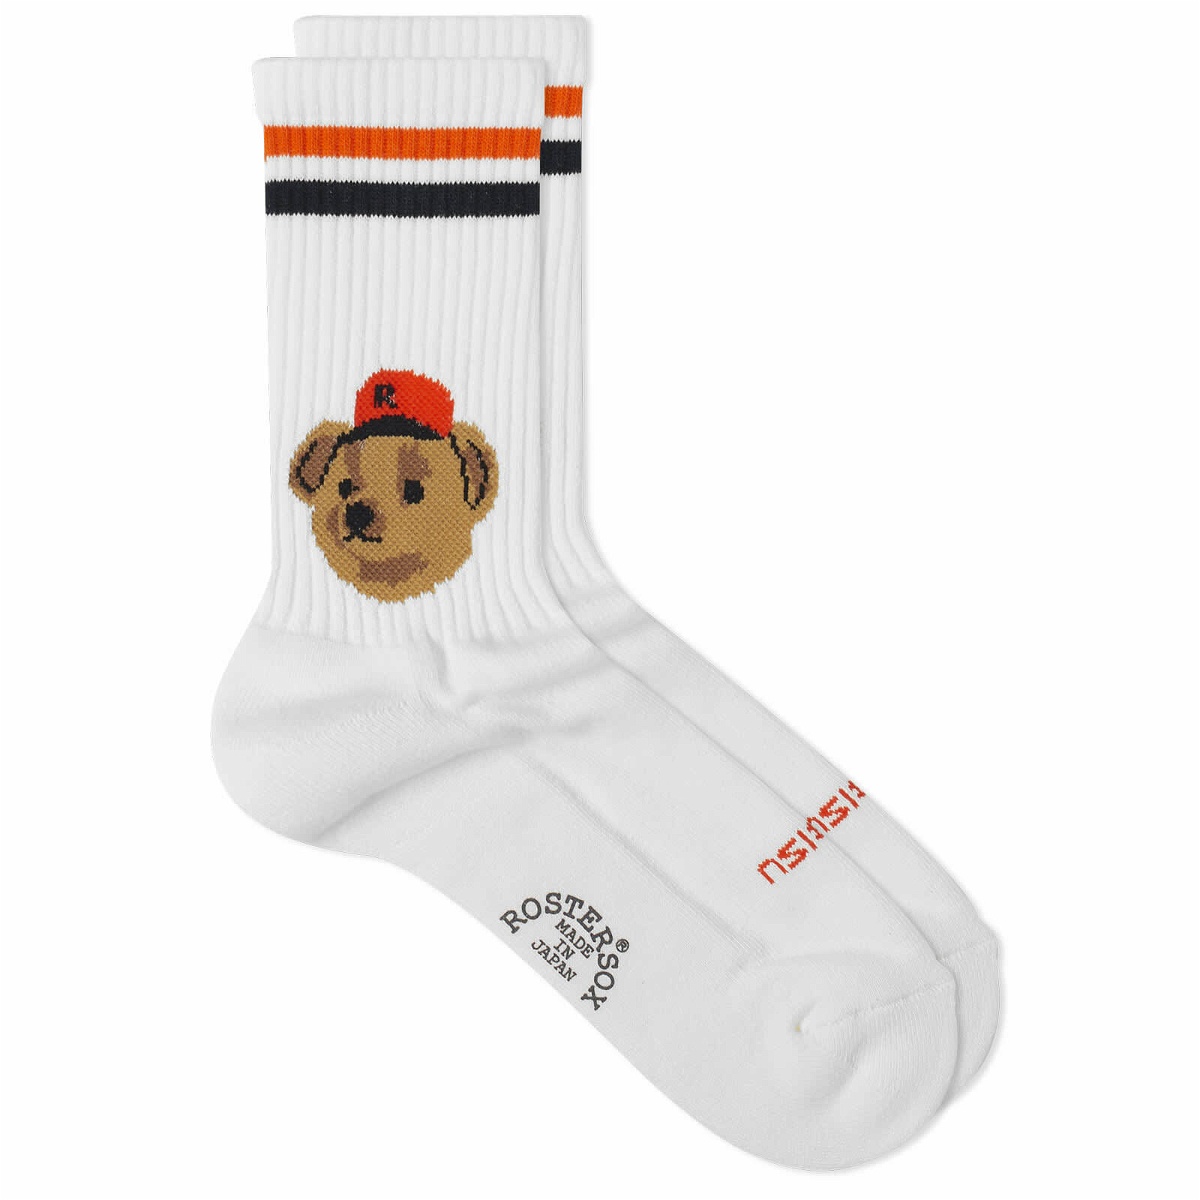 Photo: Rostersox Team Bear Socks in Orange